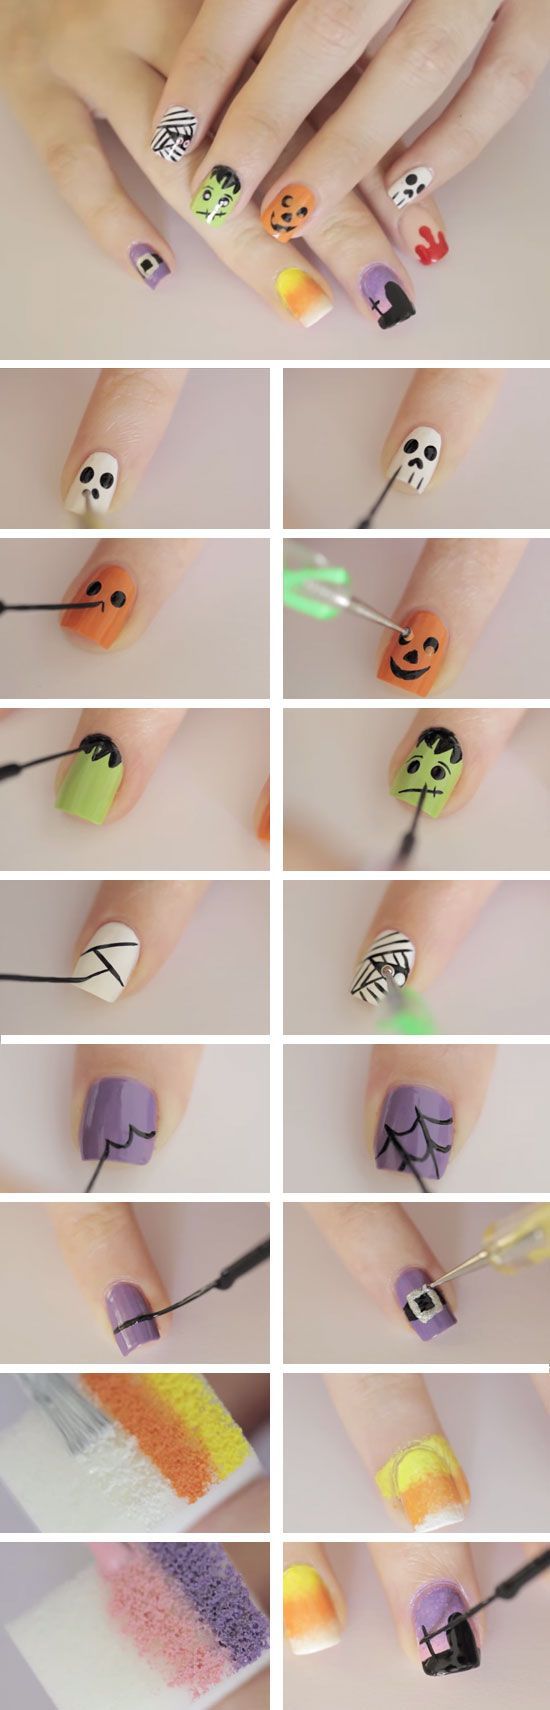 Halloween nail art tutorials